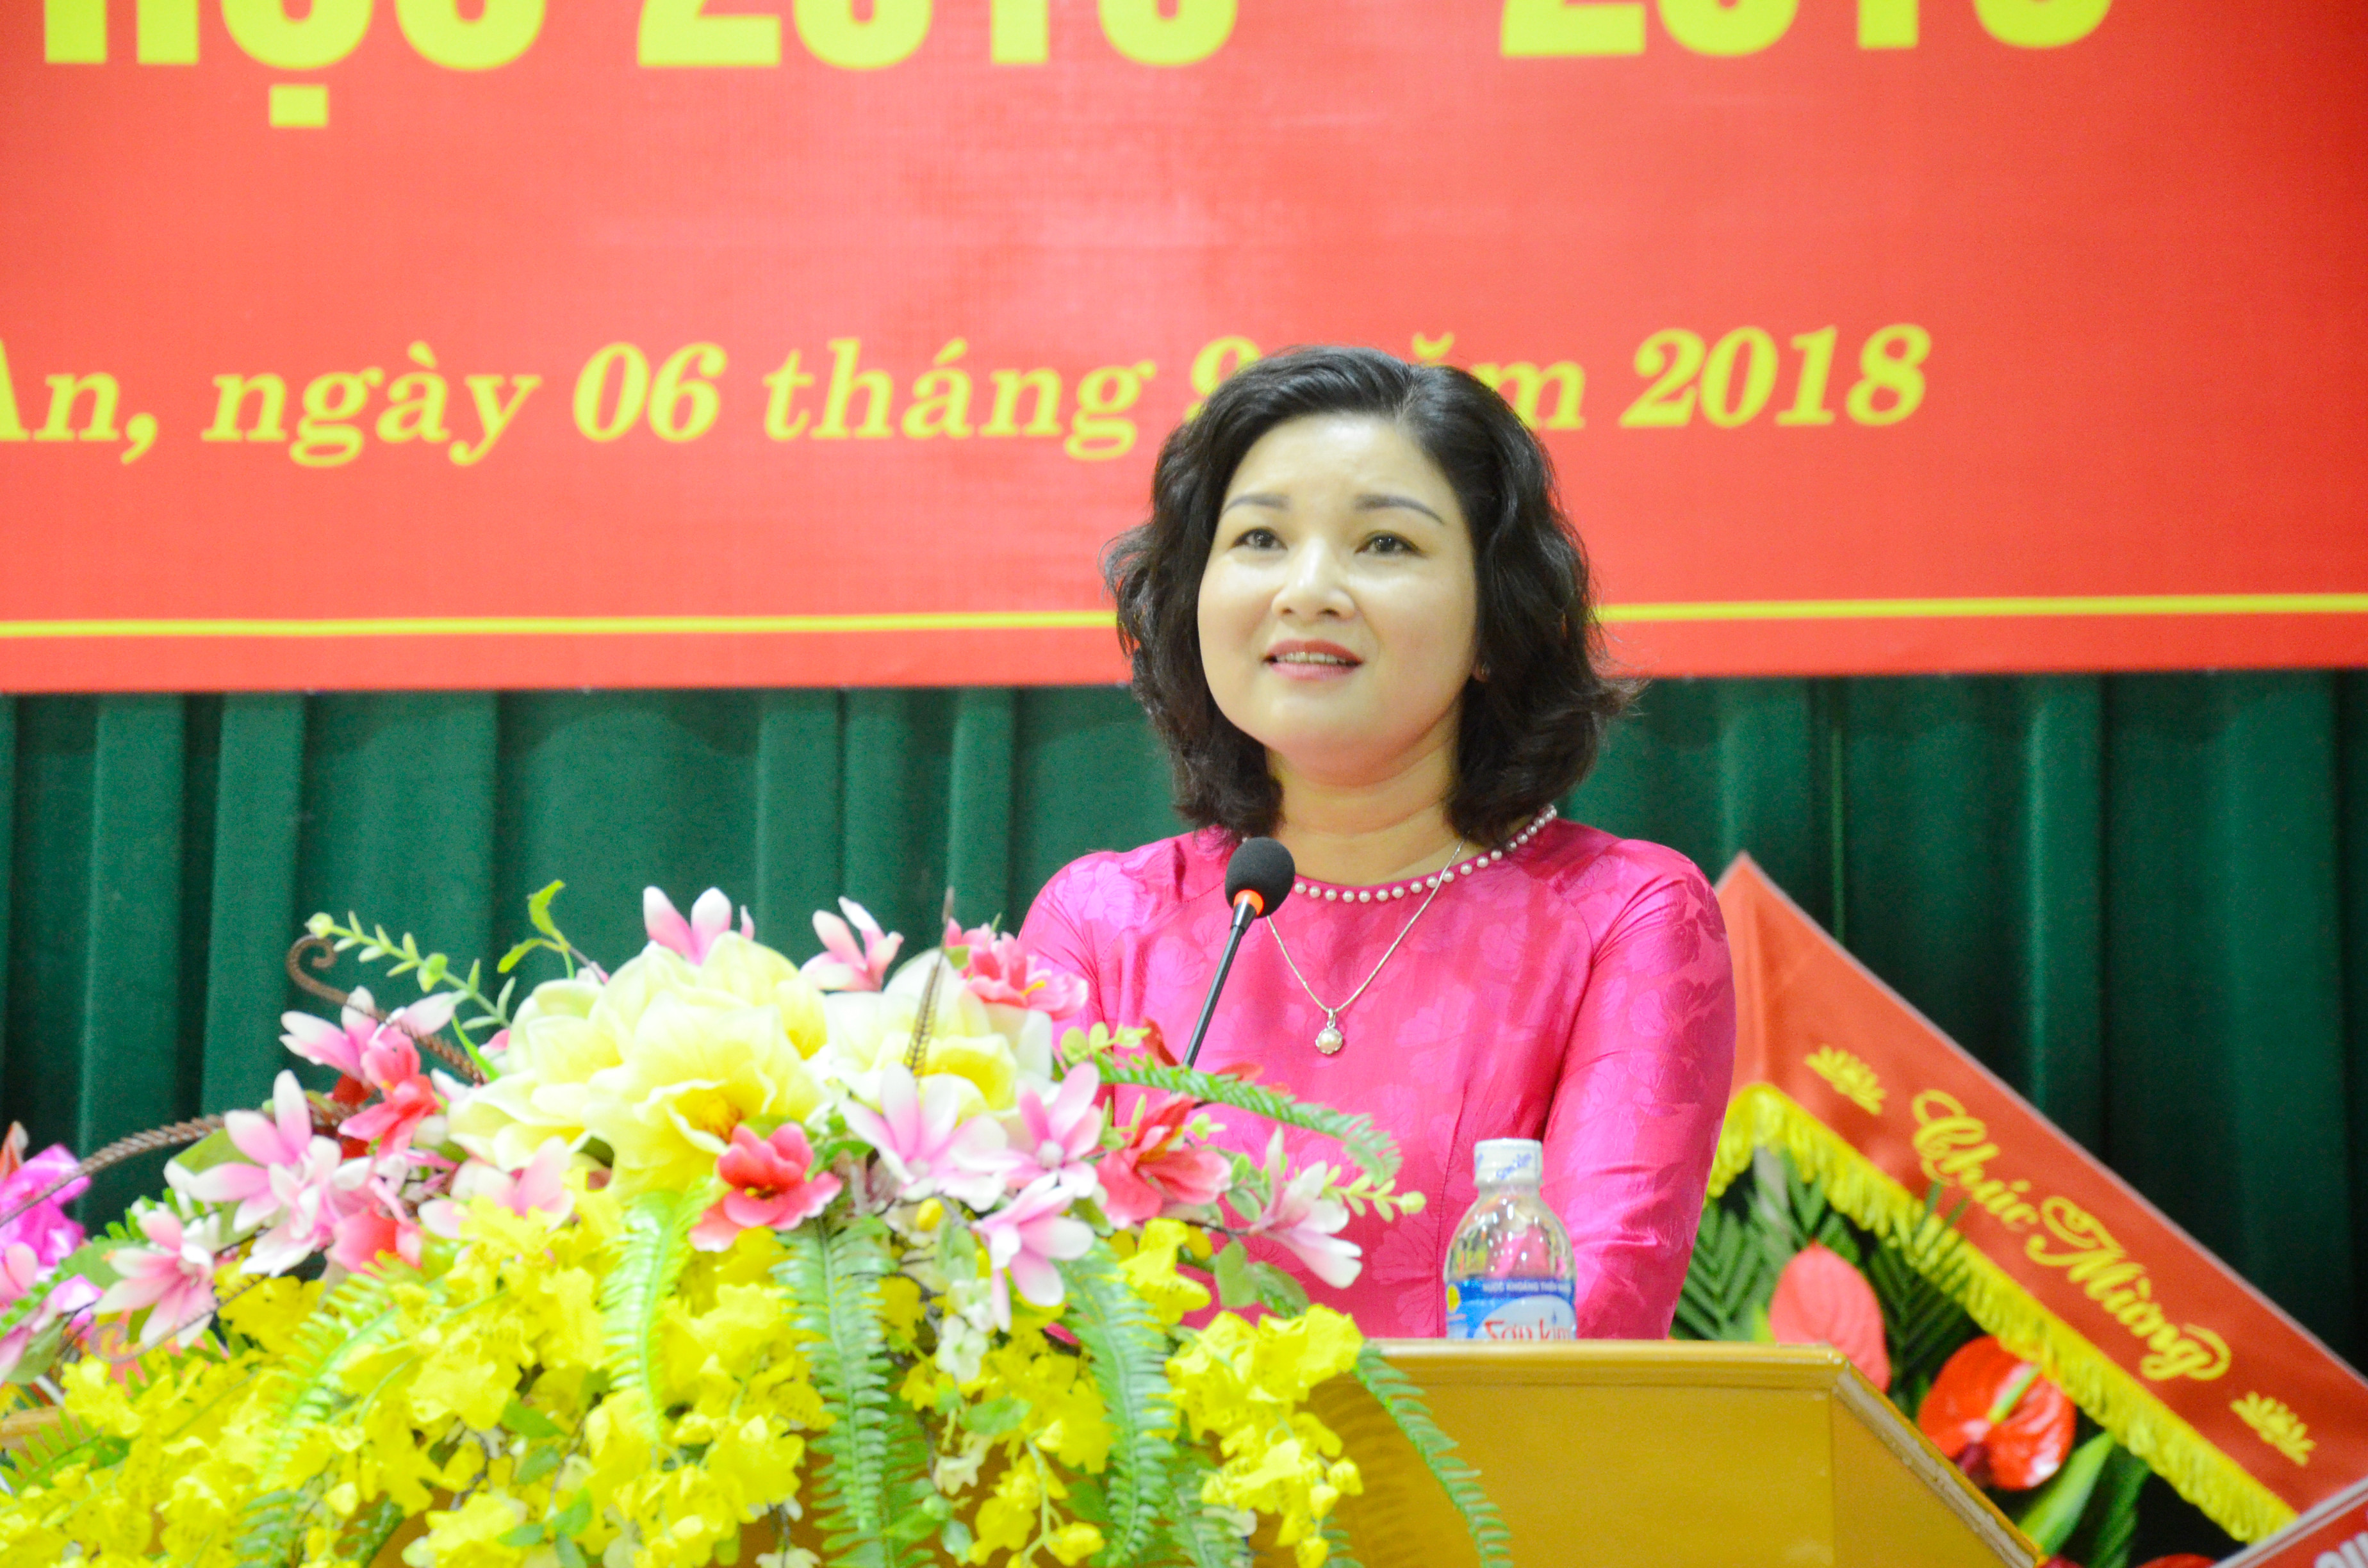 Đồng chí Nguyễn Thị Hồng Hoa đọc diễn văn Khai giảng năm học 2018-2019. Ảnh Thanh Lê